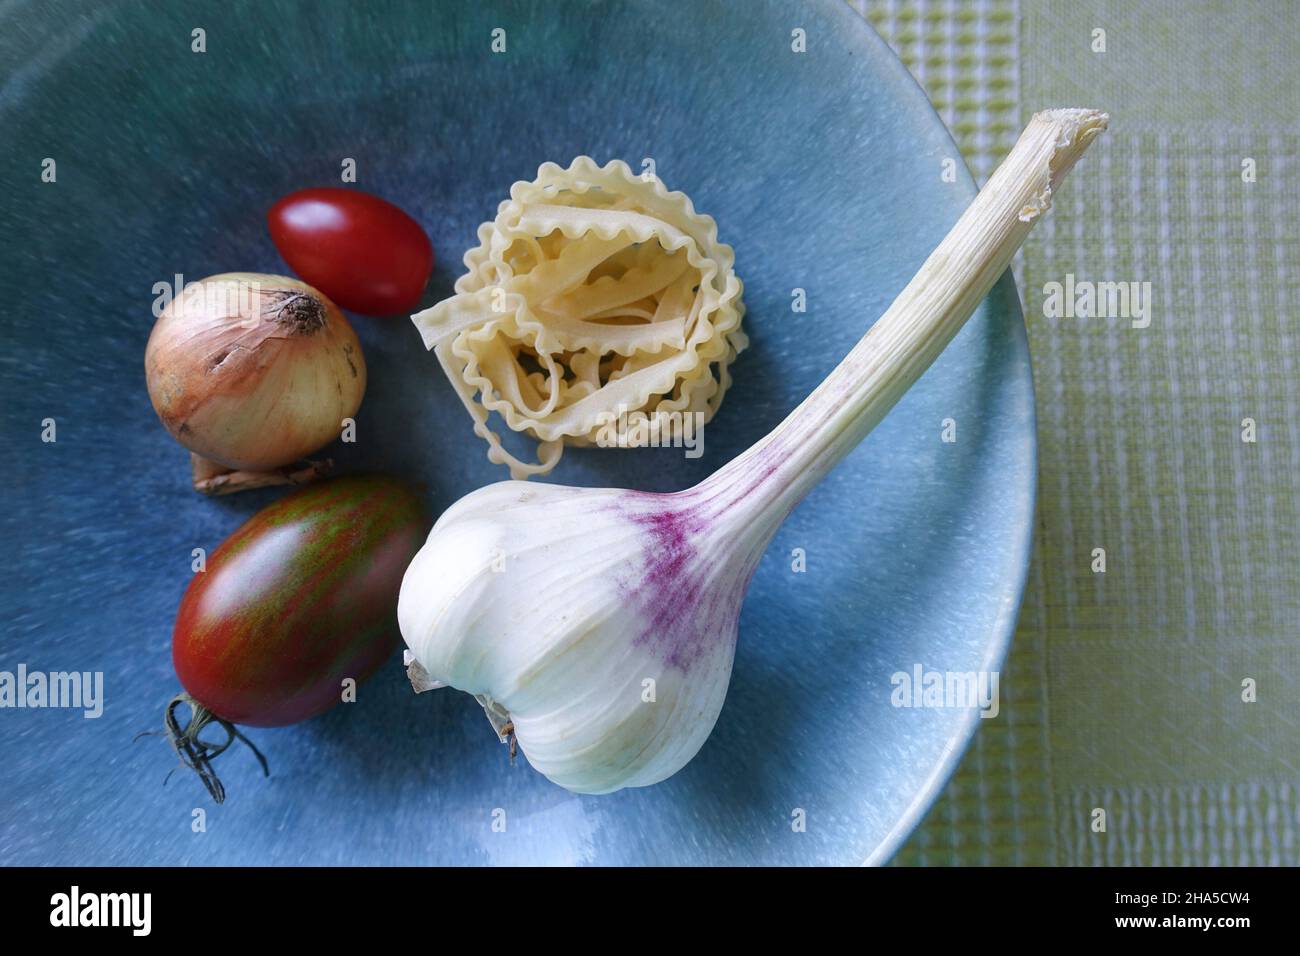 Blaue Schüssel mit Gemüse. Knoblauch, Tomaten, Nudeln und Zwiebeln, Zutaten für eine Pasta-Gericht. Stockfoto